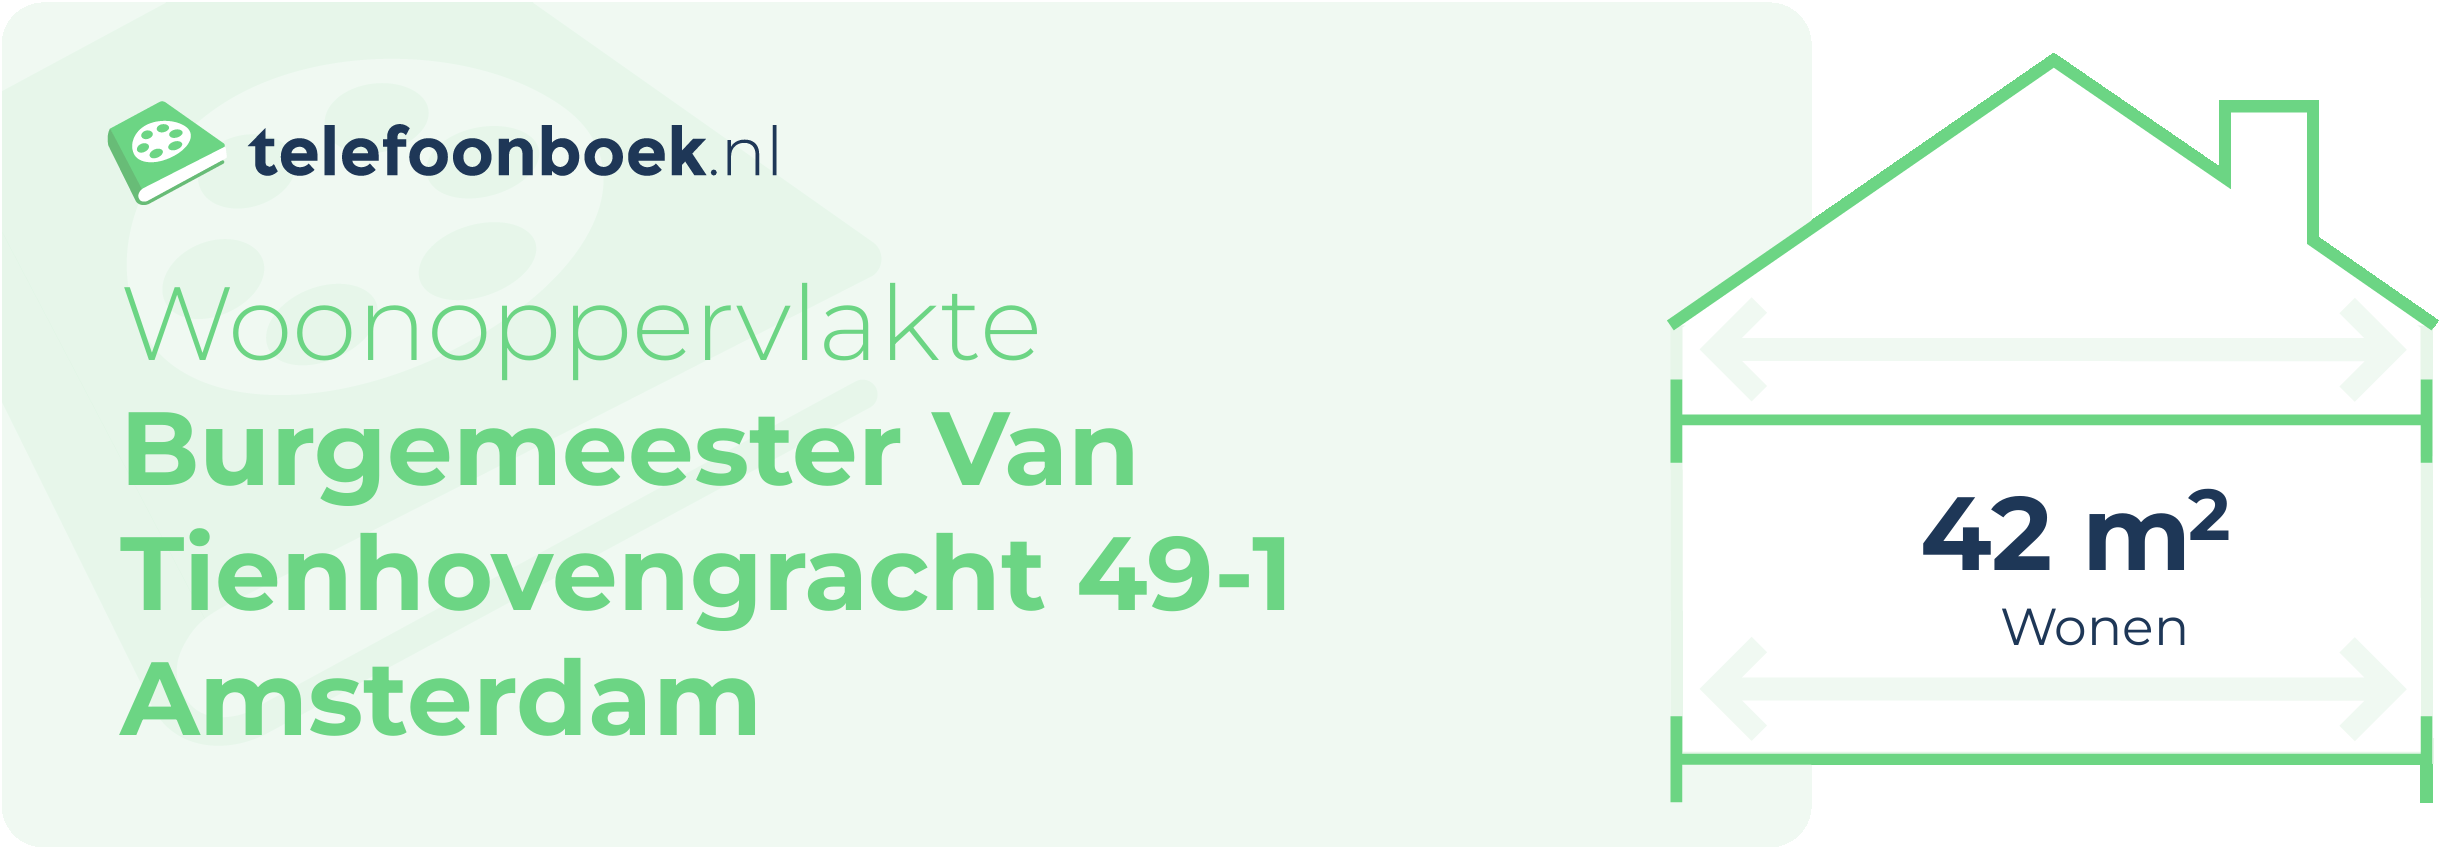 Woonoppervlakte Burgemeester Van Tienhovengracht 49-1 Amsterdam